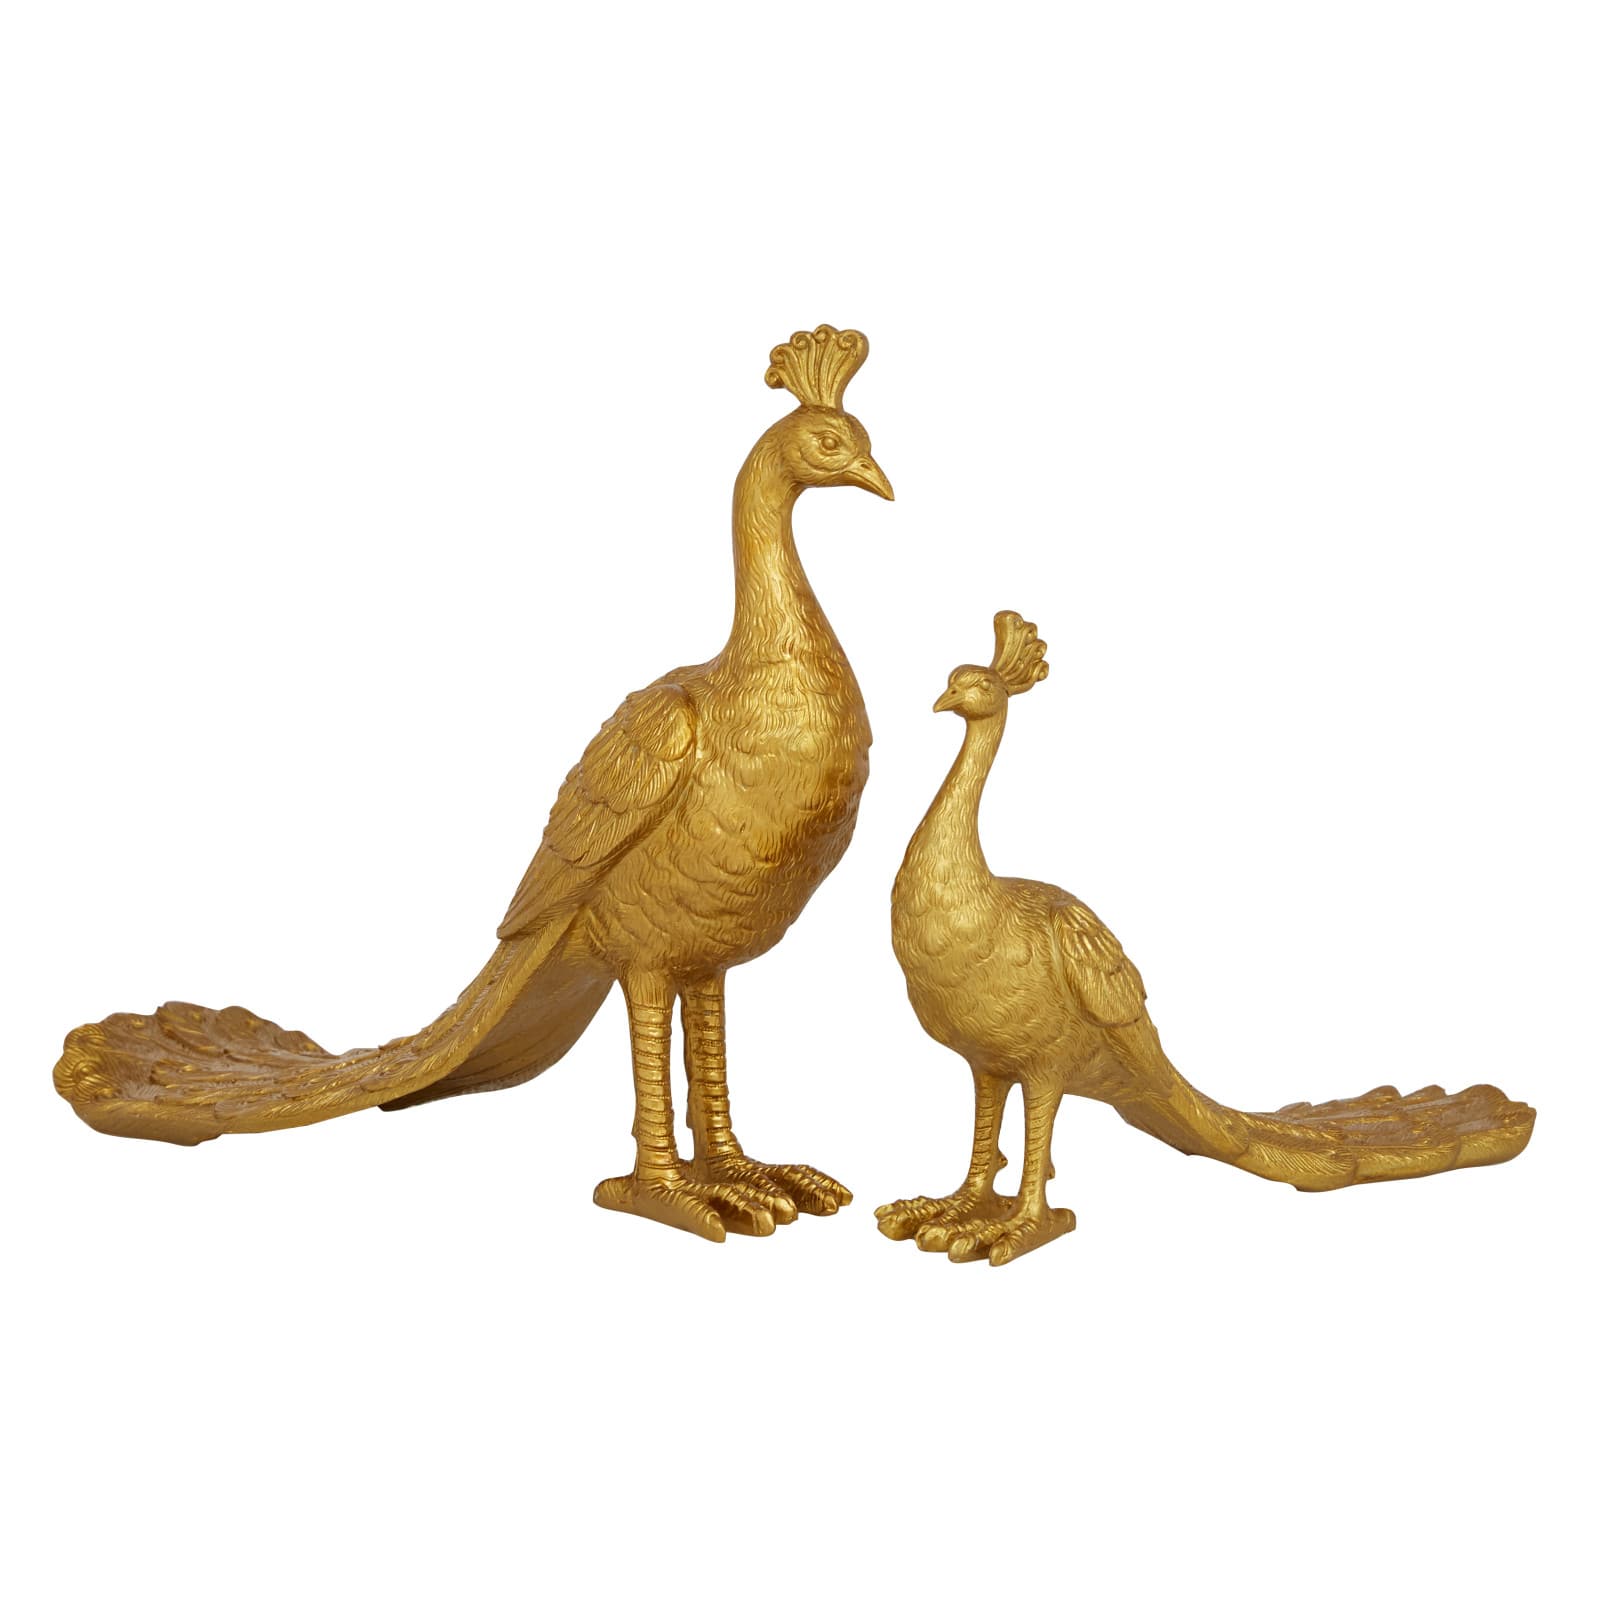 2 Wonderful Unused Vintage Gold Metallic Peacock Appliques 